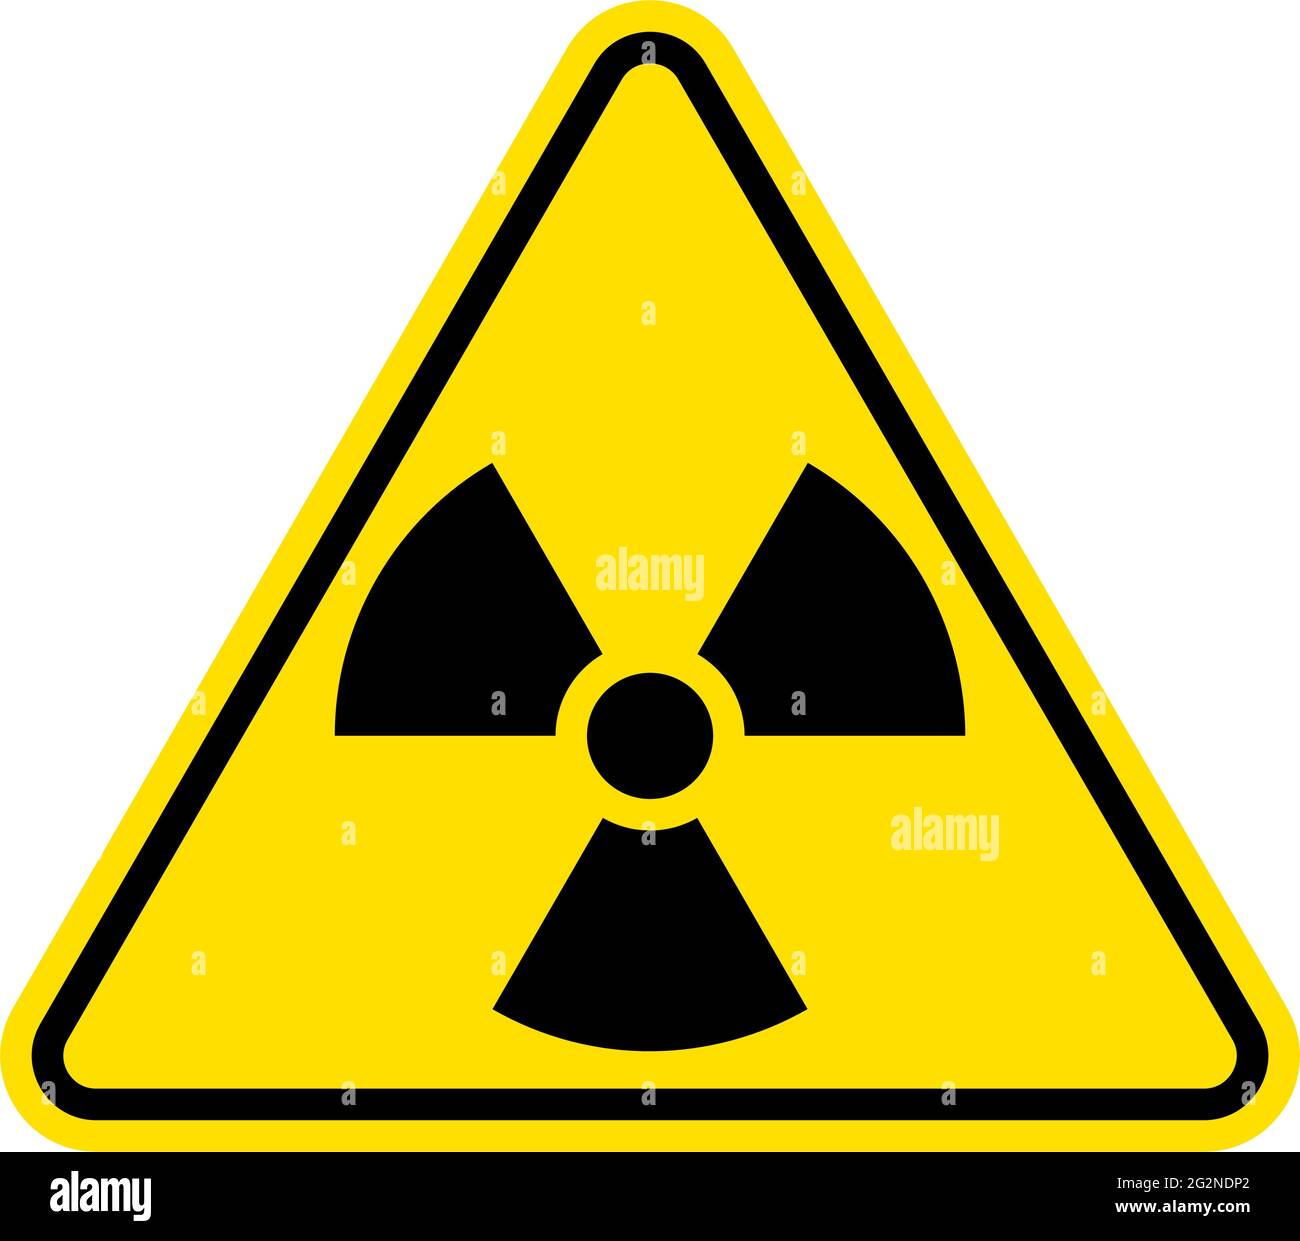 Strahlungszeichen. Warnsymbol. Flaches Symbol für radioaktive Vektoren Stock Vektor